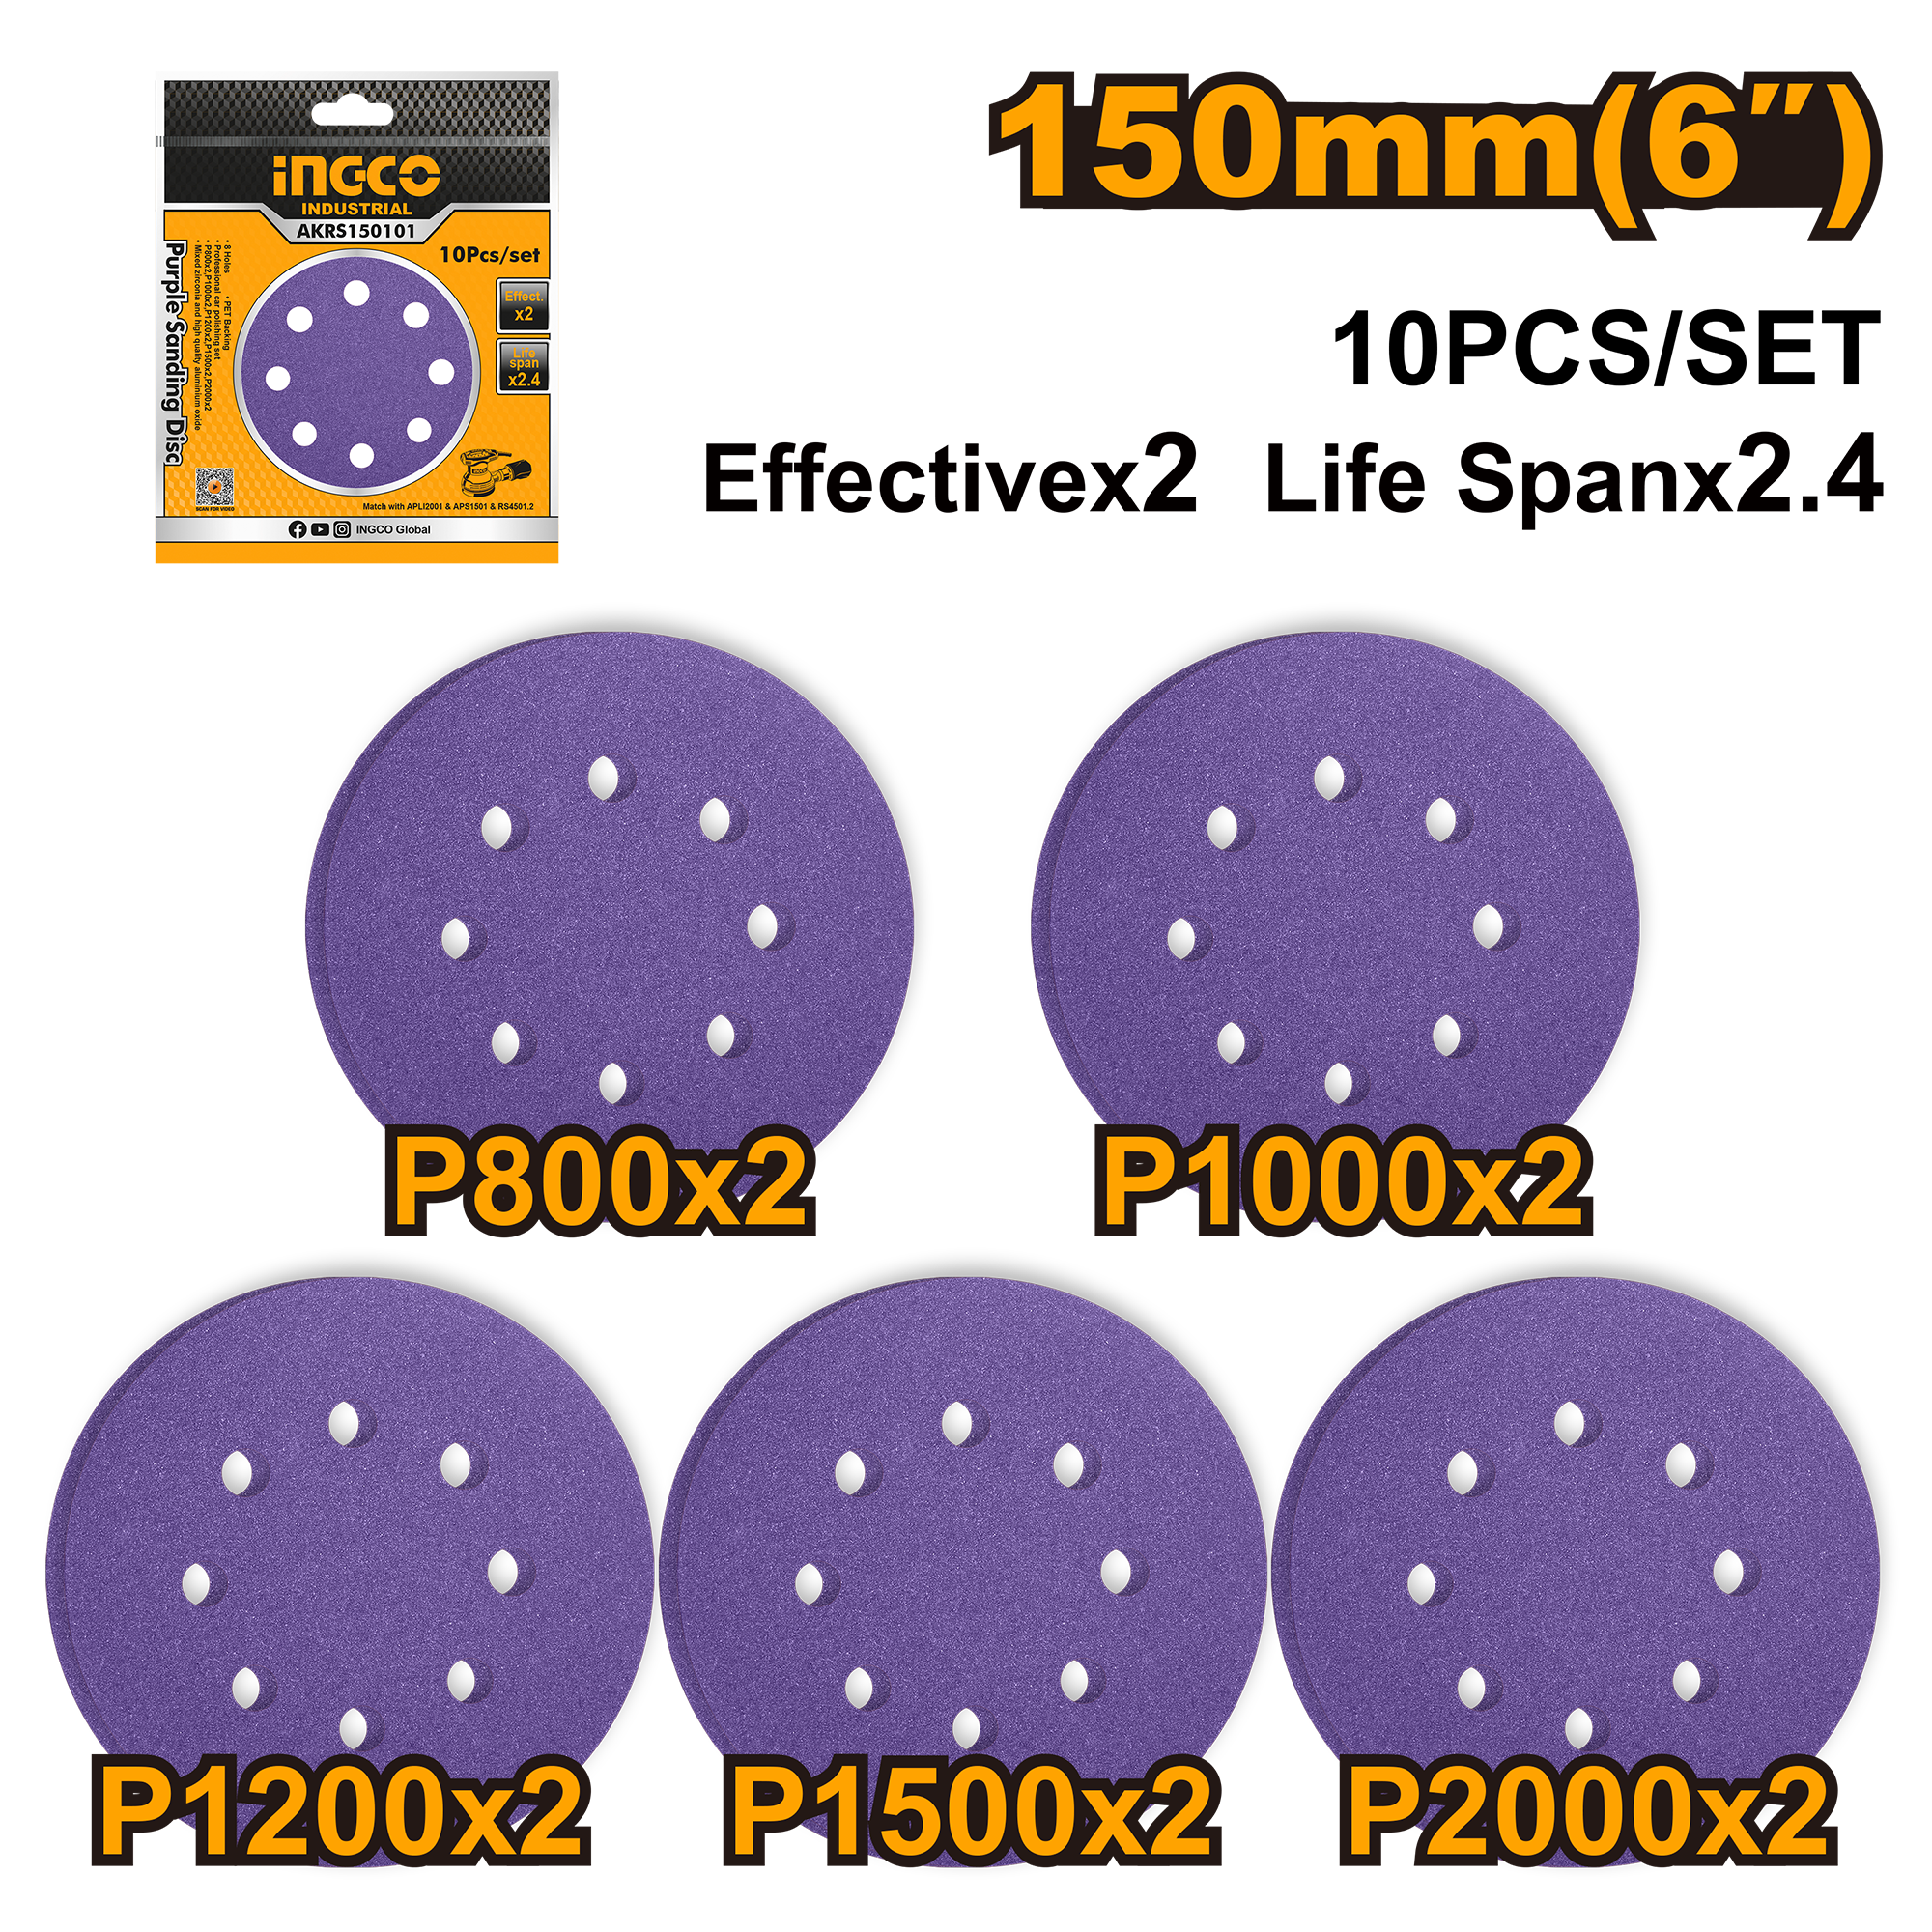 Набор шлифовальных кругов INGCO AKRS150101 INDUSTRIAL 150 мм 10 шт. Р800-2000 8 отв.